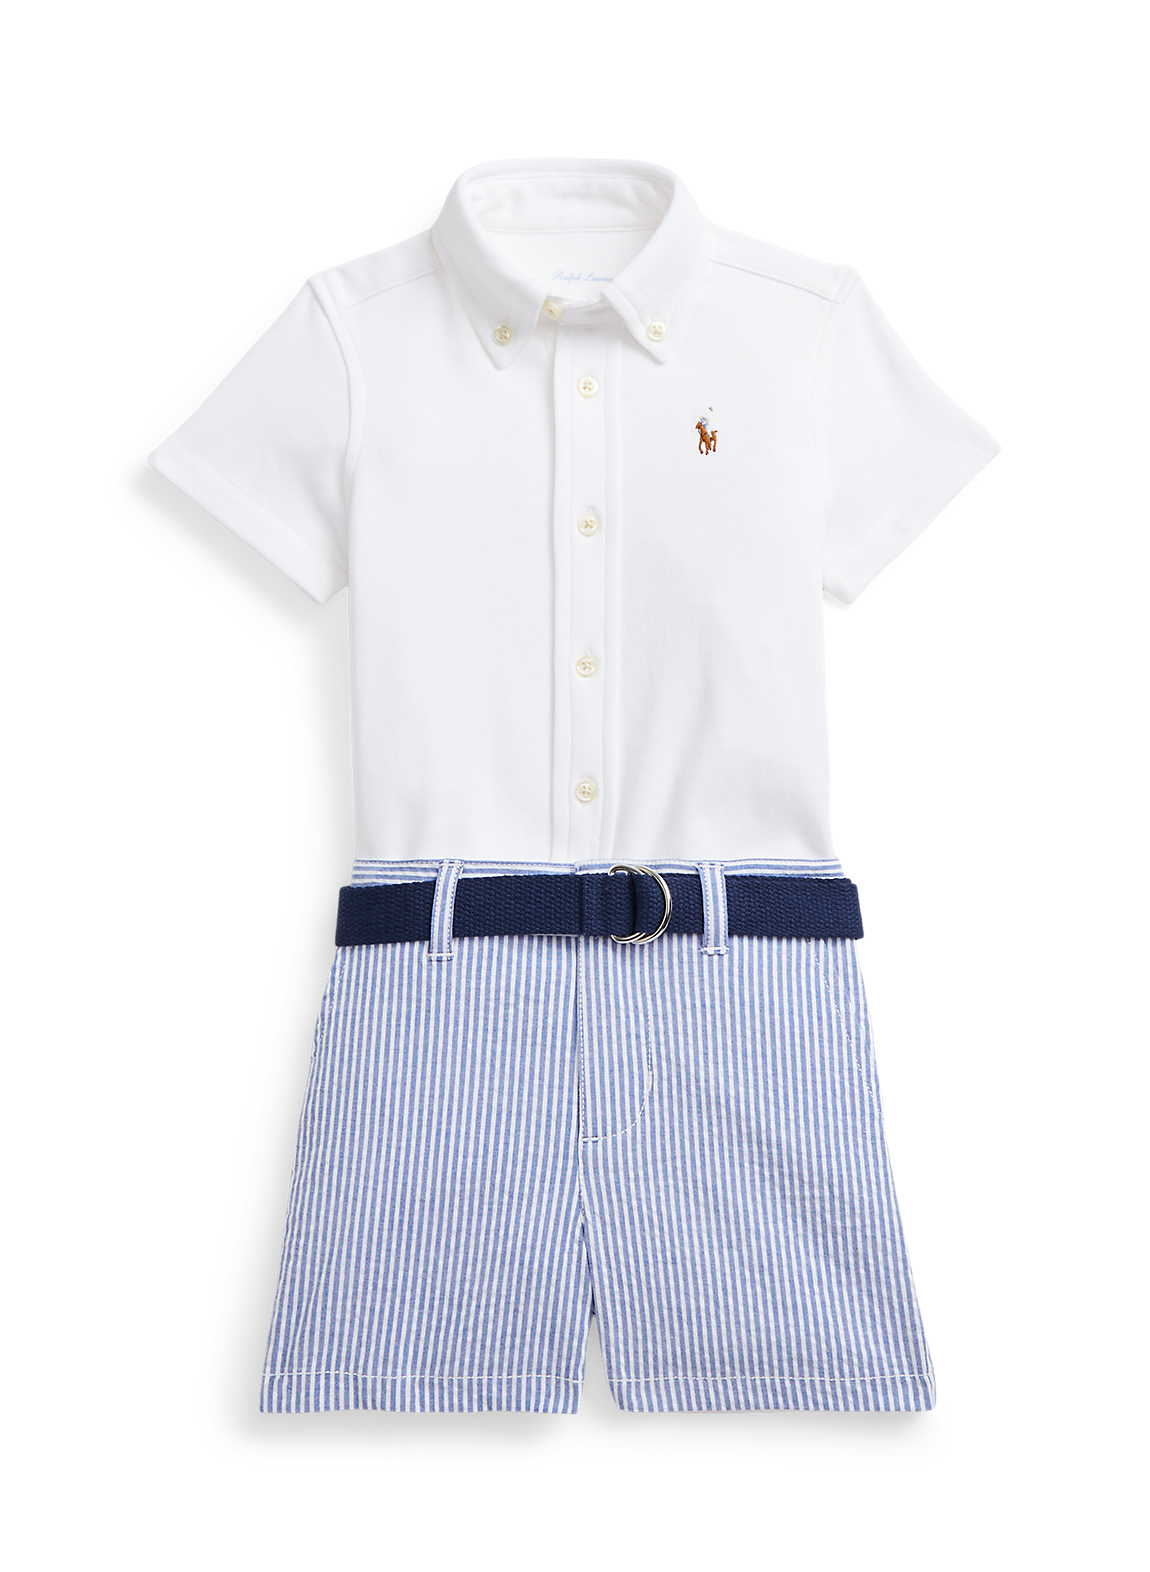 RALPH LAUREN（ラルフローレン）のシャツ、ベルト ＆ シアサッカーパンツ セット。ベビー服のラインナップが豊富。おしゃれさんに贈りたいセットアップ